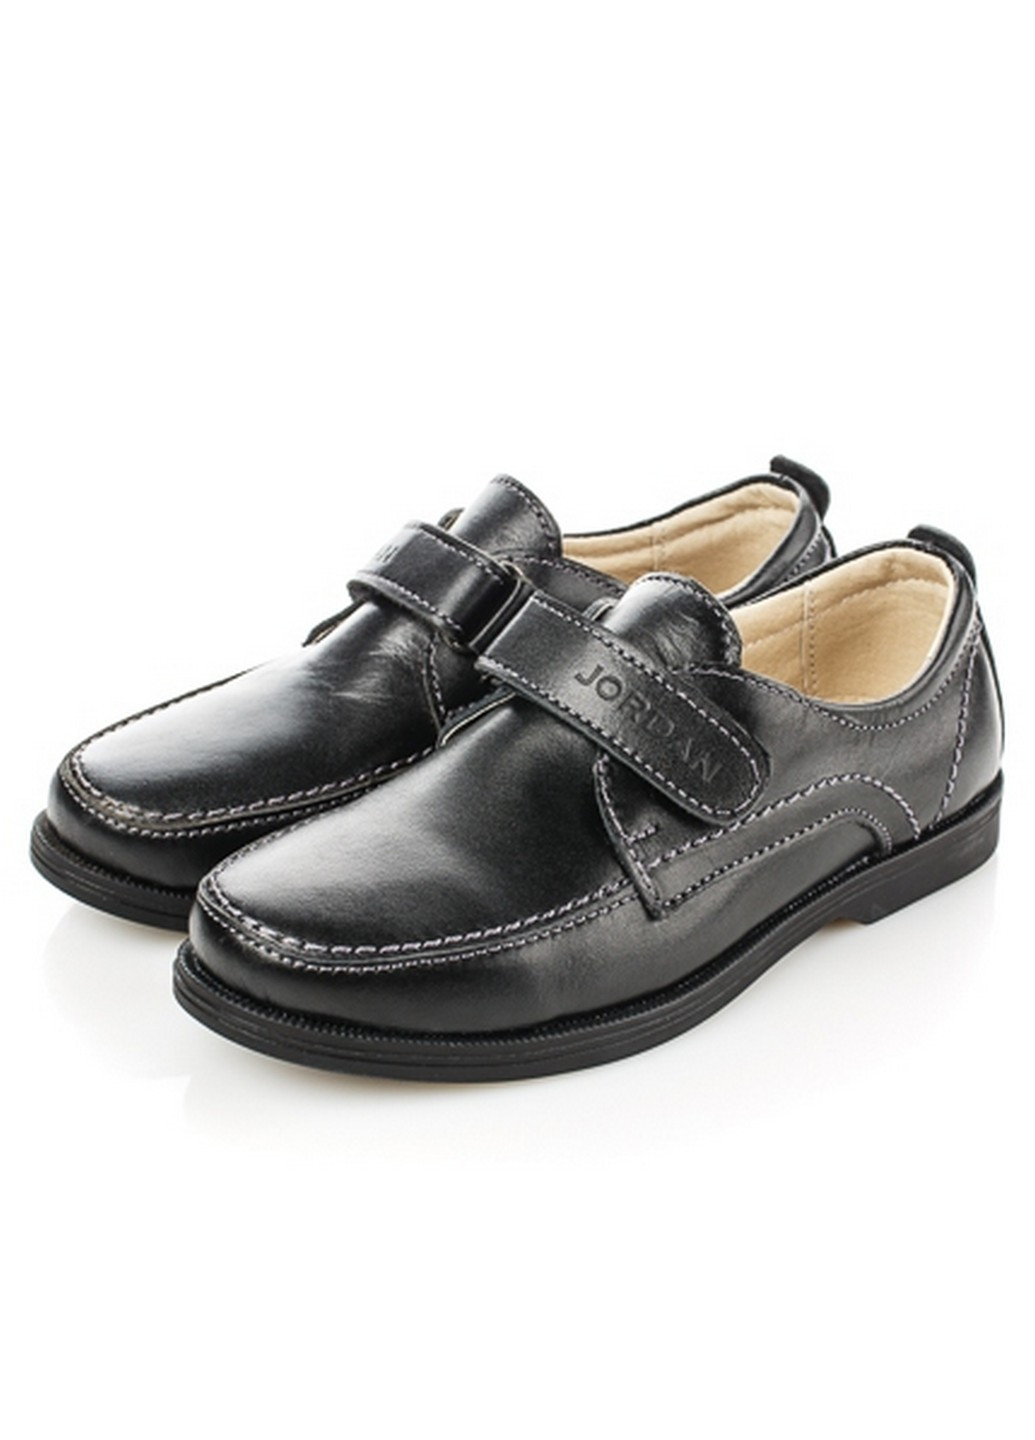 Черные туфли классические Jordan